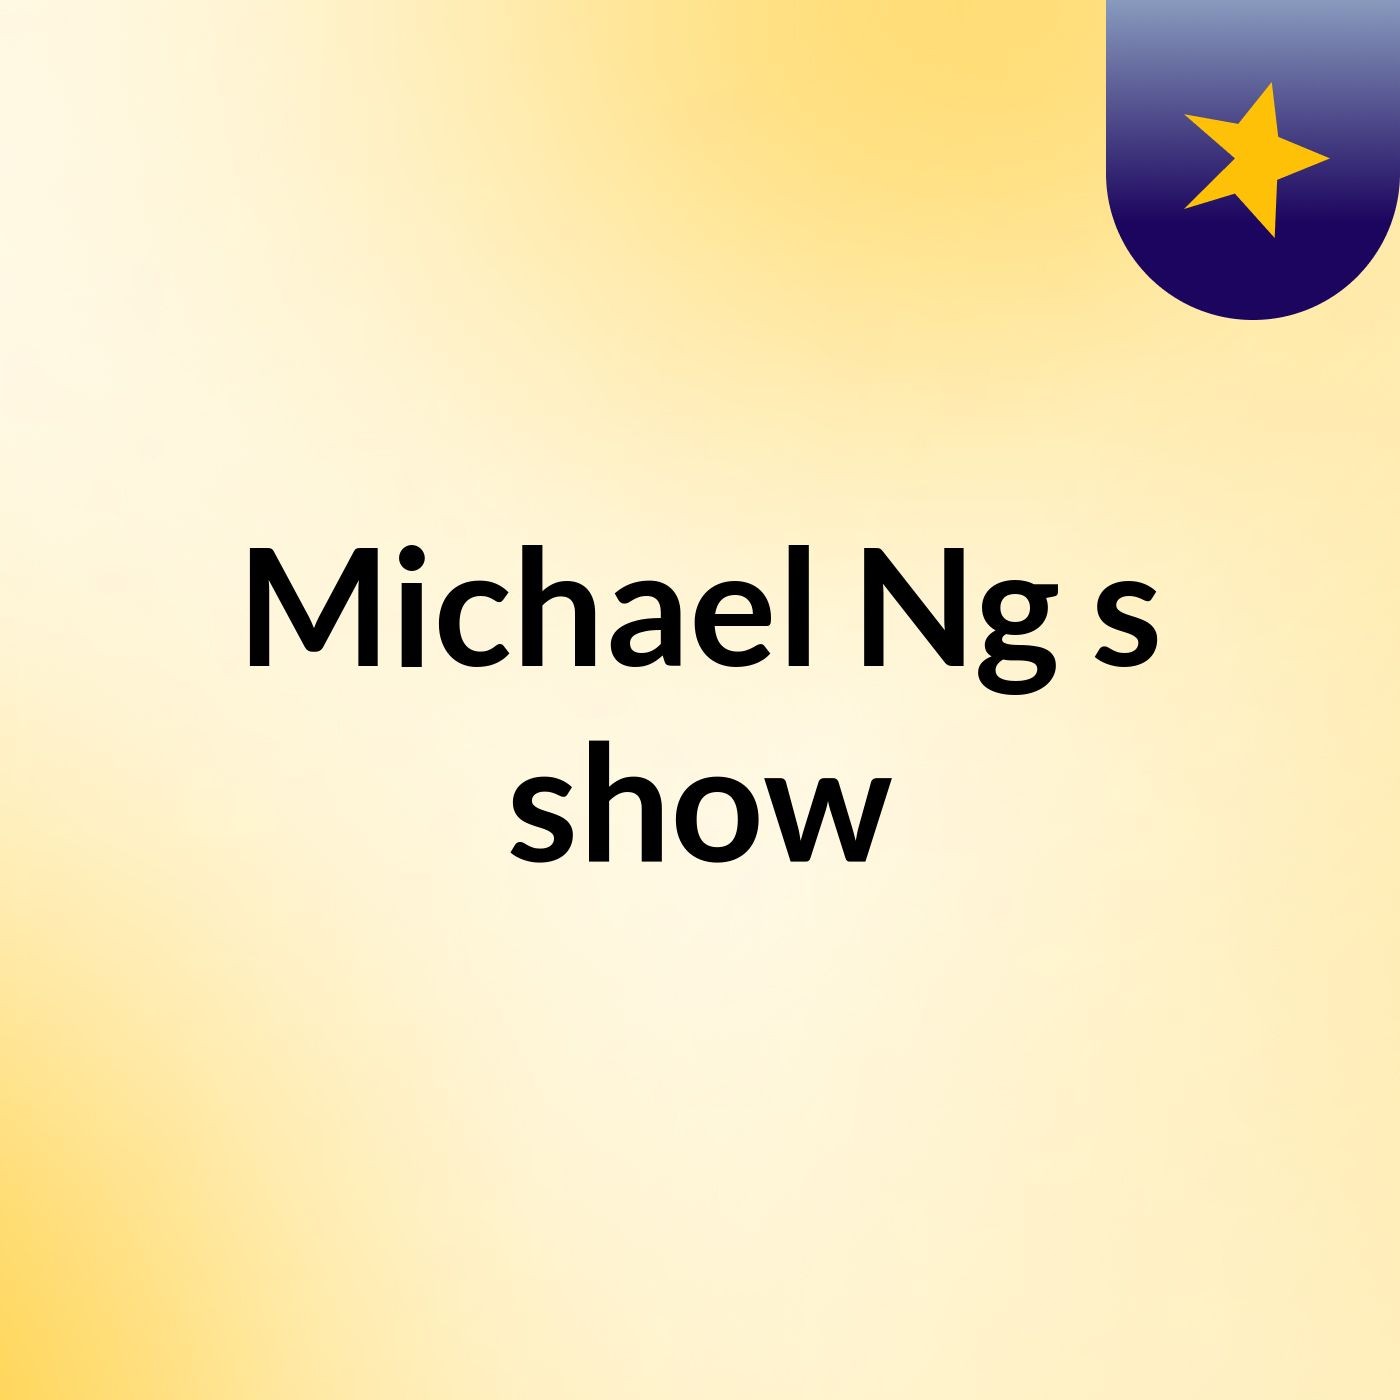 Michael Ng's show